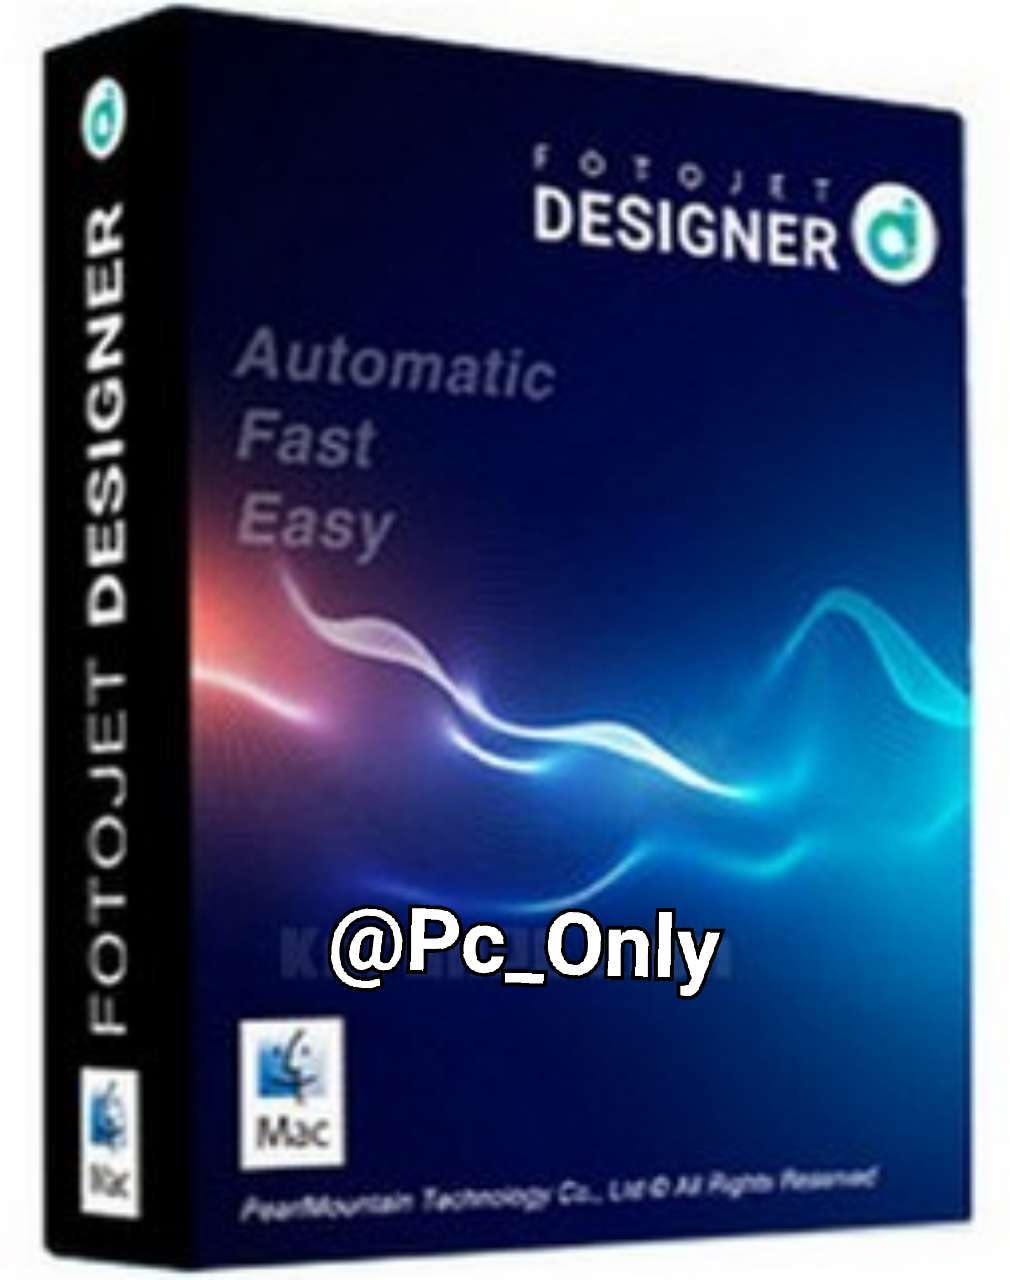 FotoJet Designer v1.1.5 Software full setup free Download